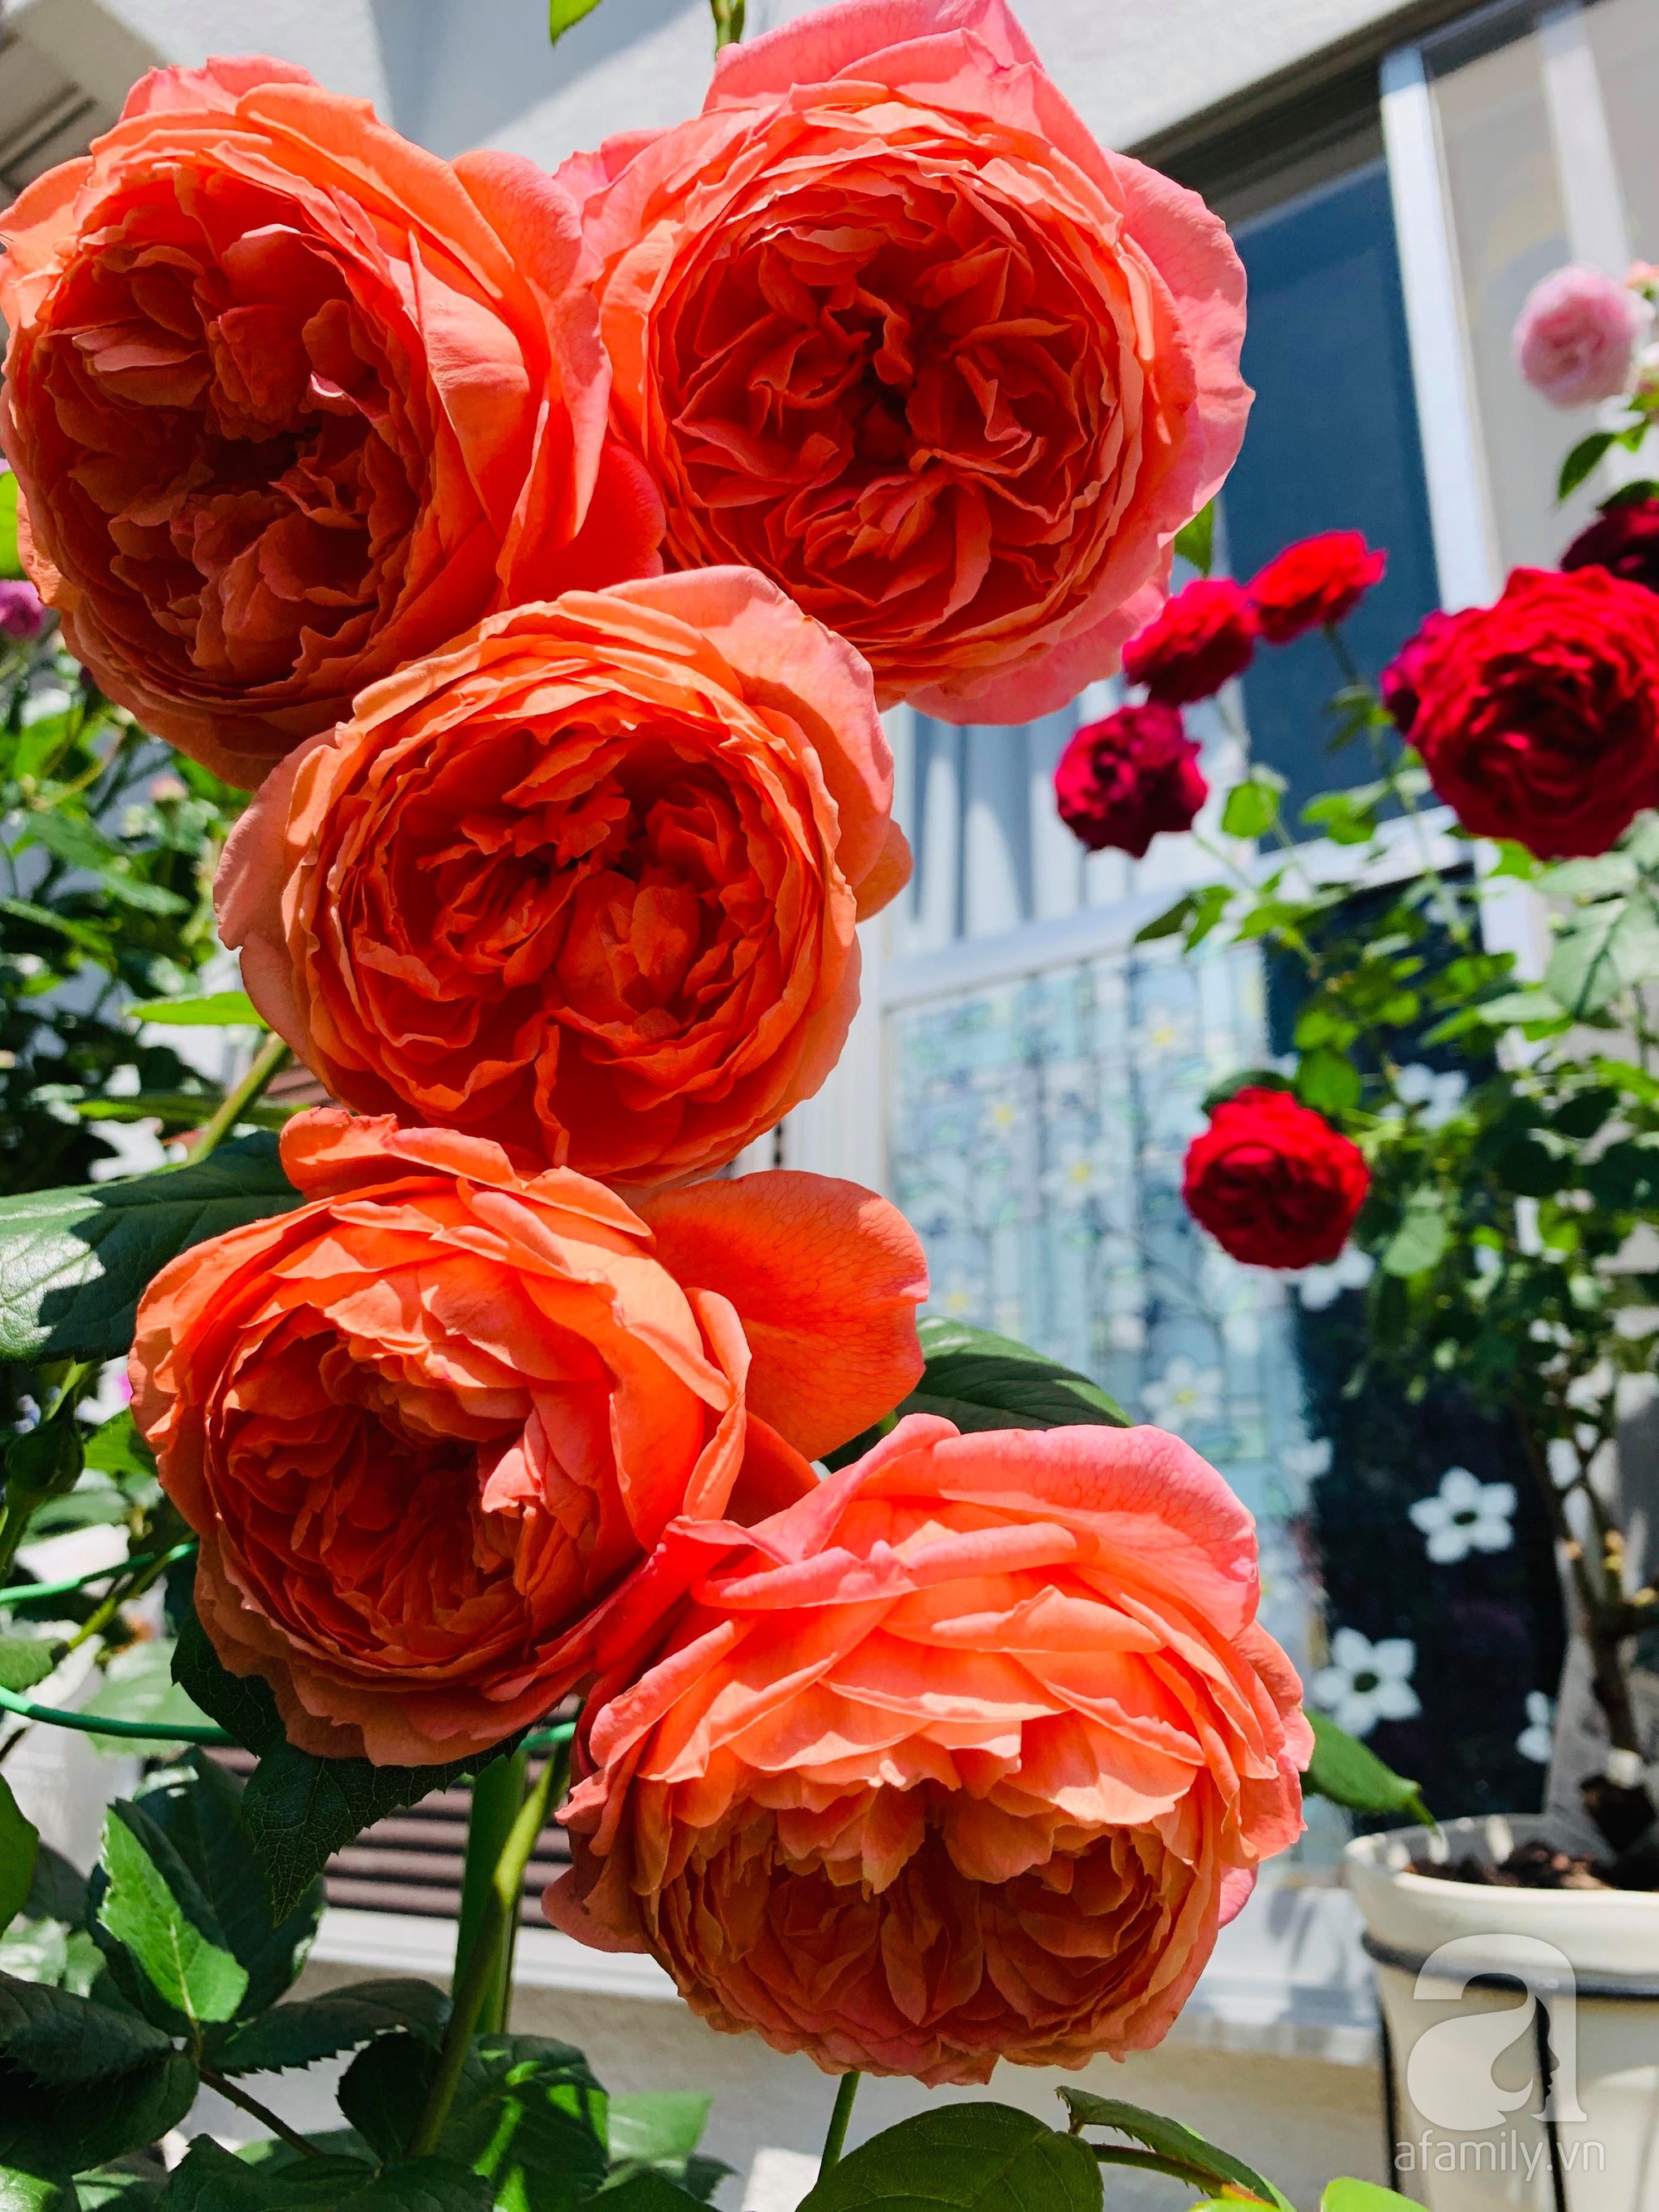 Góc vườn 20m² thơm ngát hoa hồng đủ loại của nữ giám đốc Việt ở Nhật Bản - Ảnh 14.